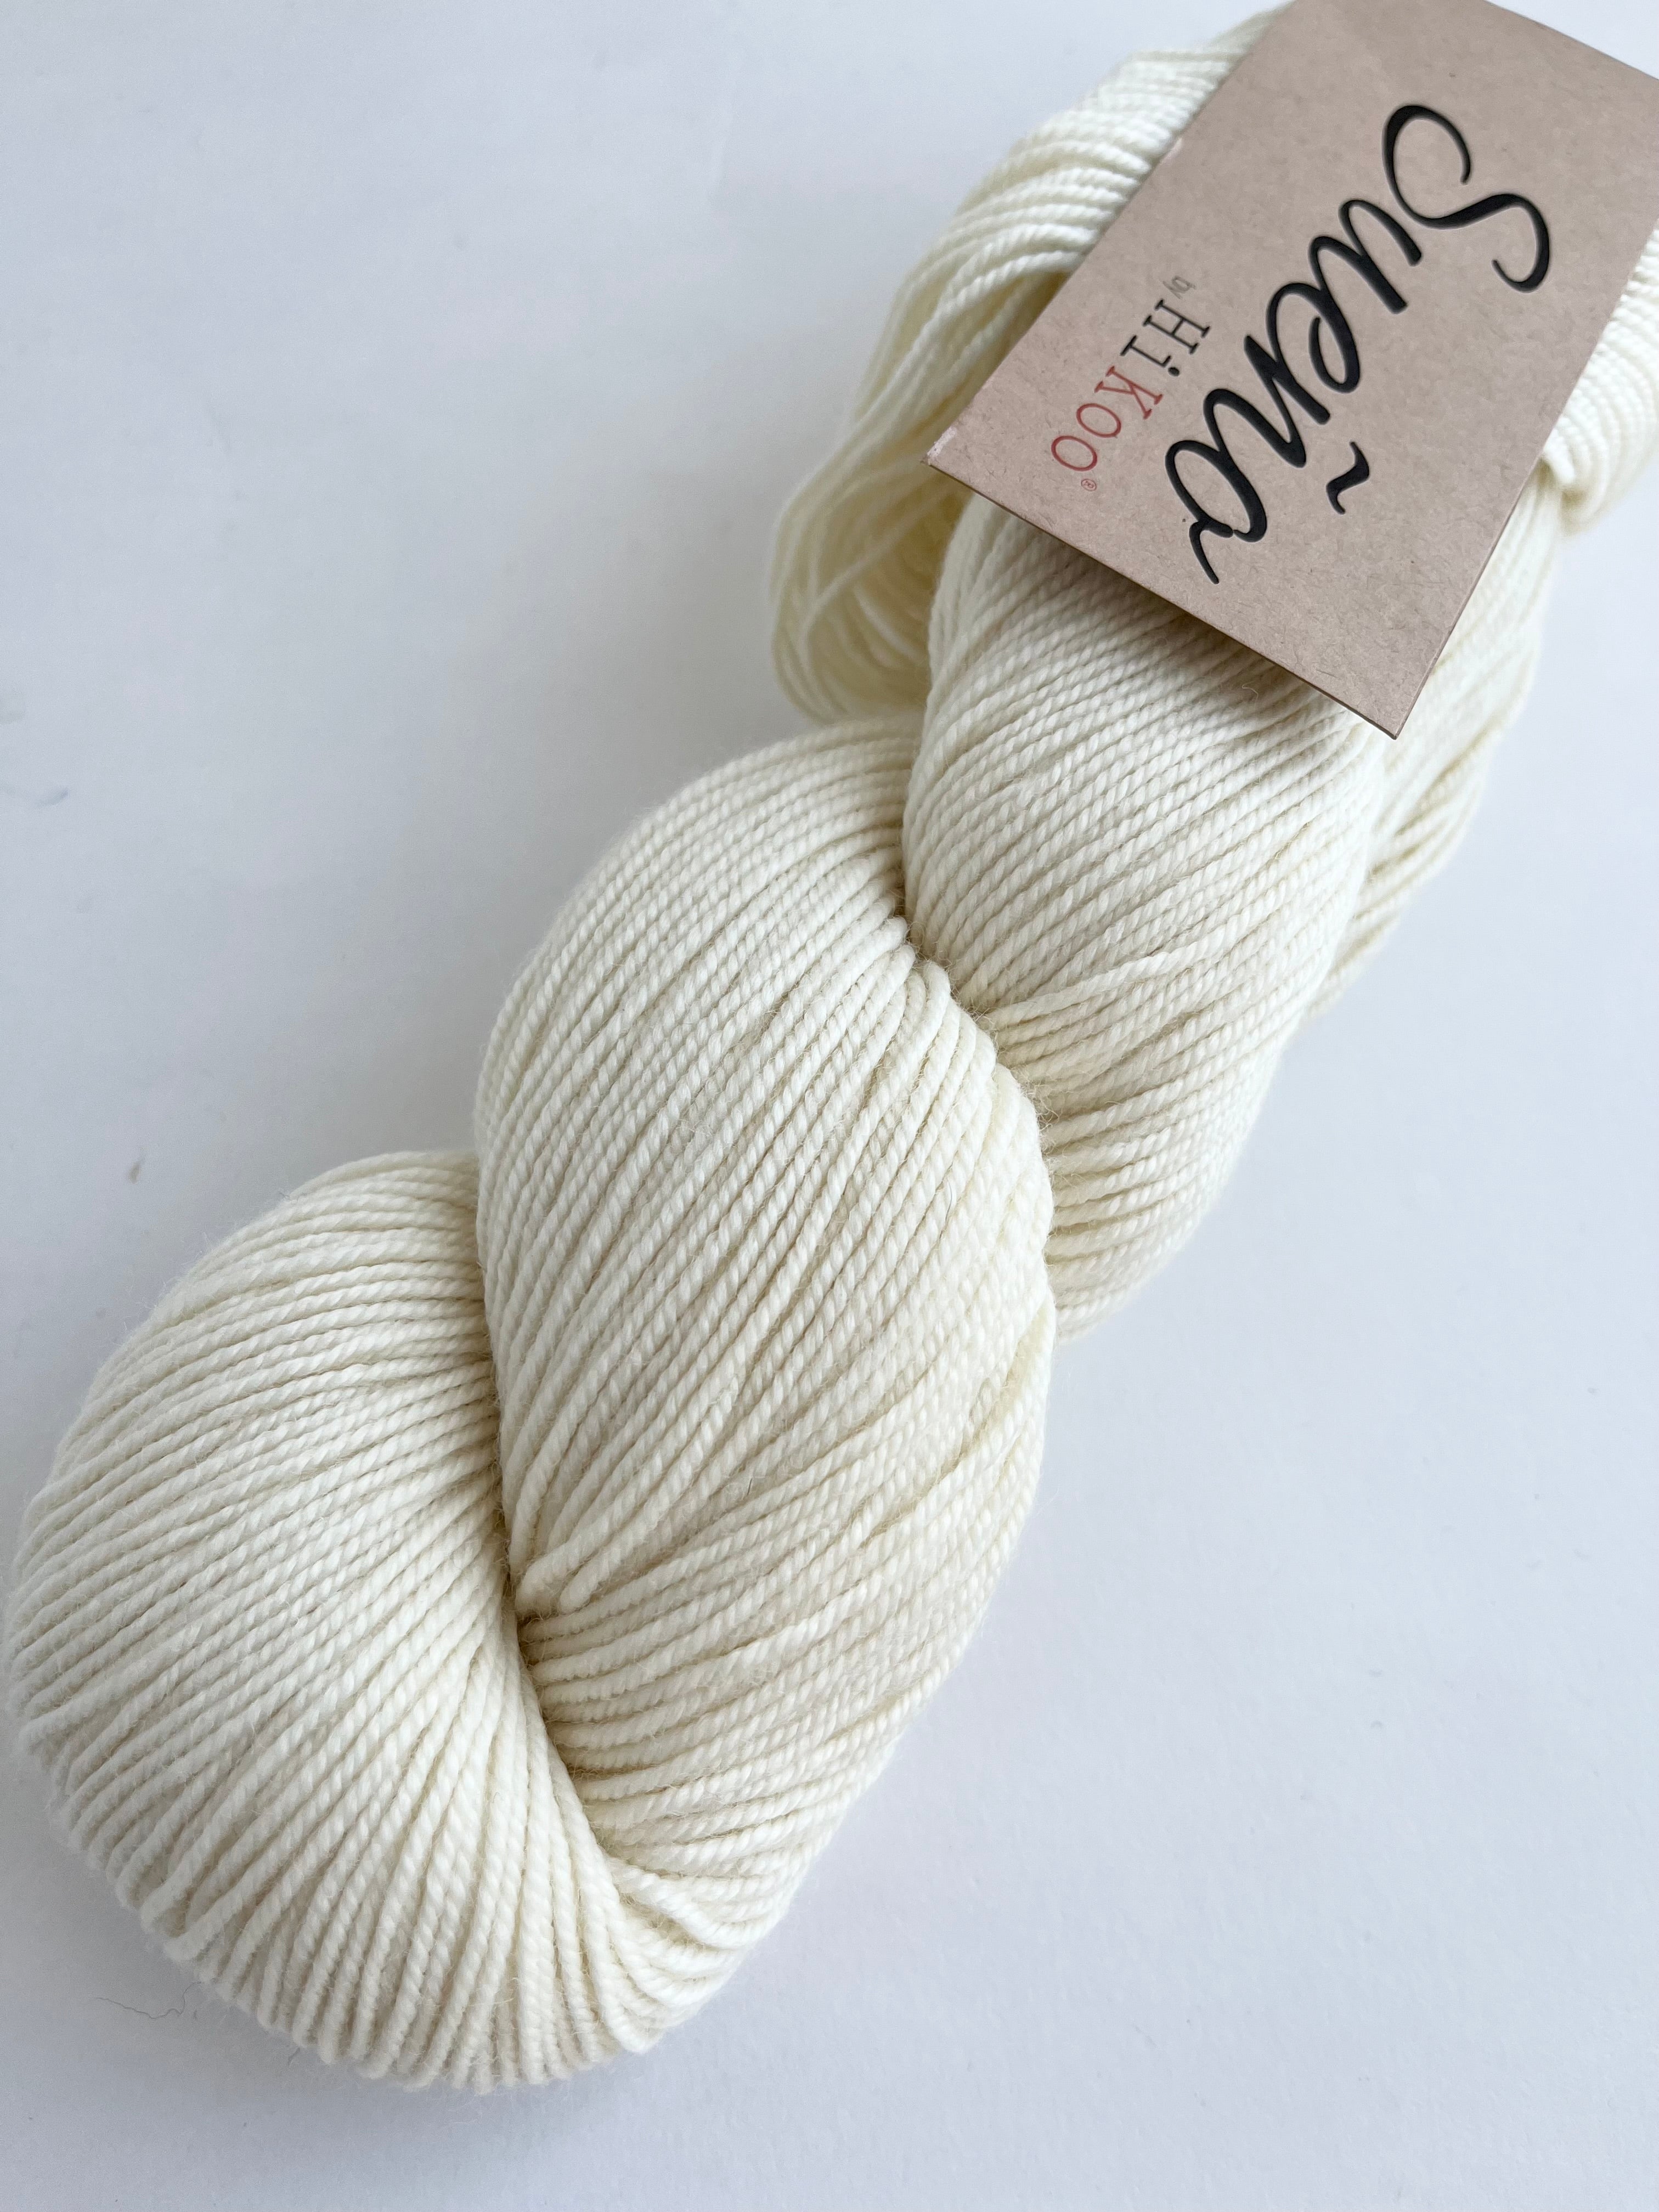 Natural - Sueño yarn from HiKoo